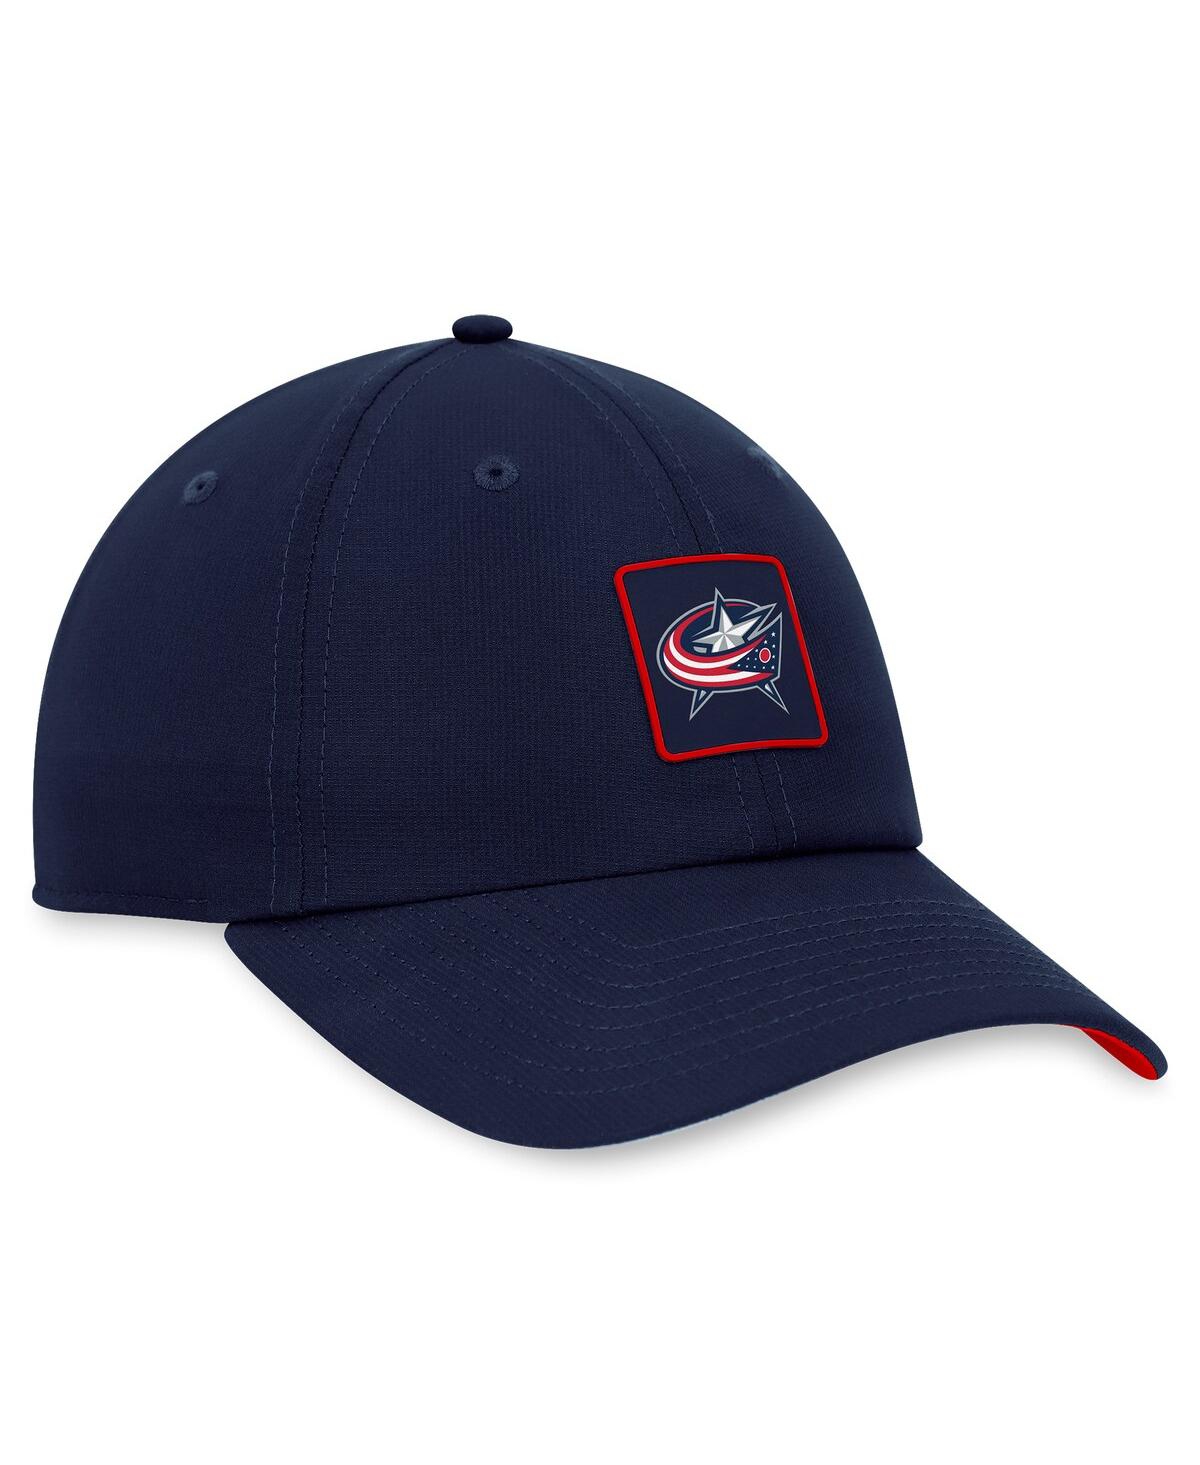 Shop Fanatics Men's  Navy Columbus Blue Jackets Authentic Pro Rink Adjustable Hat